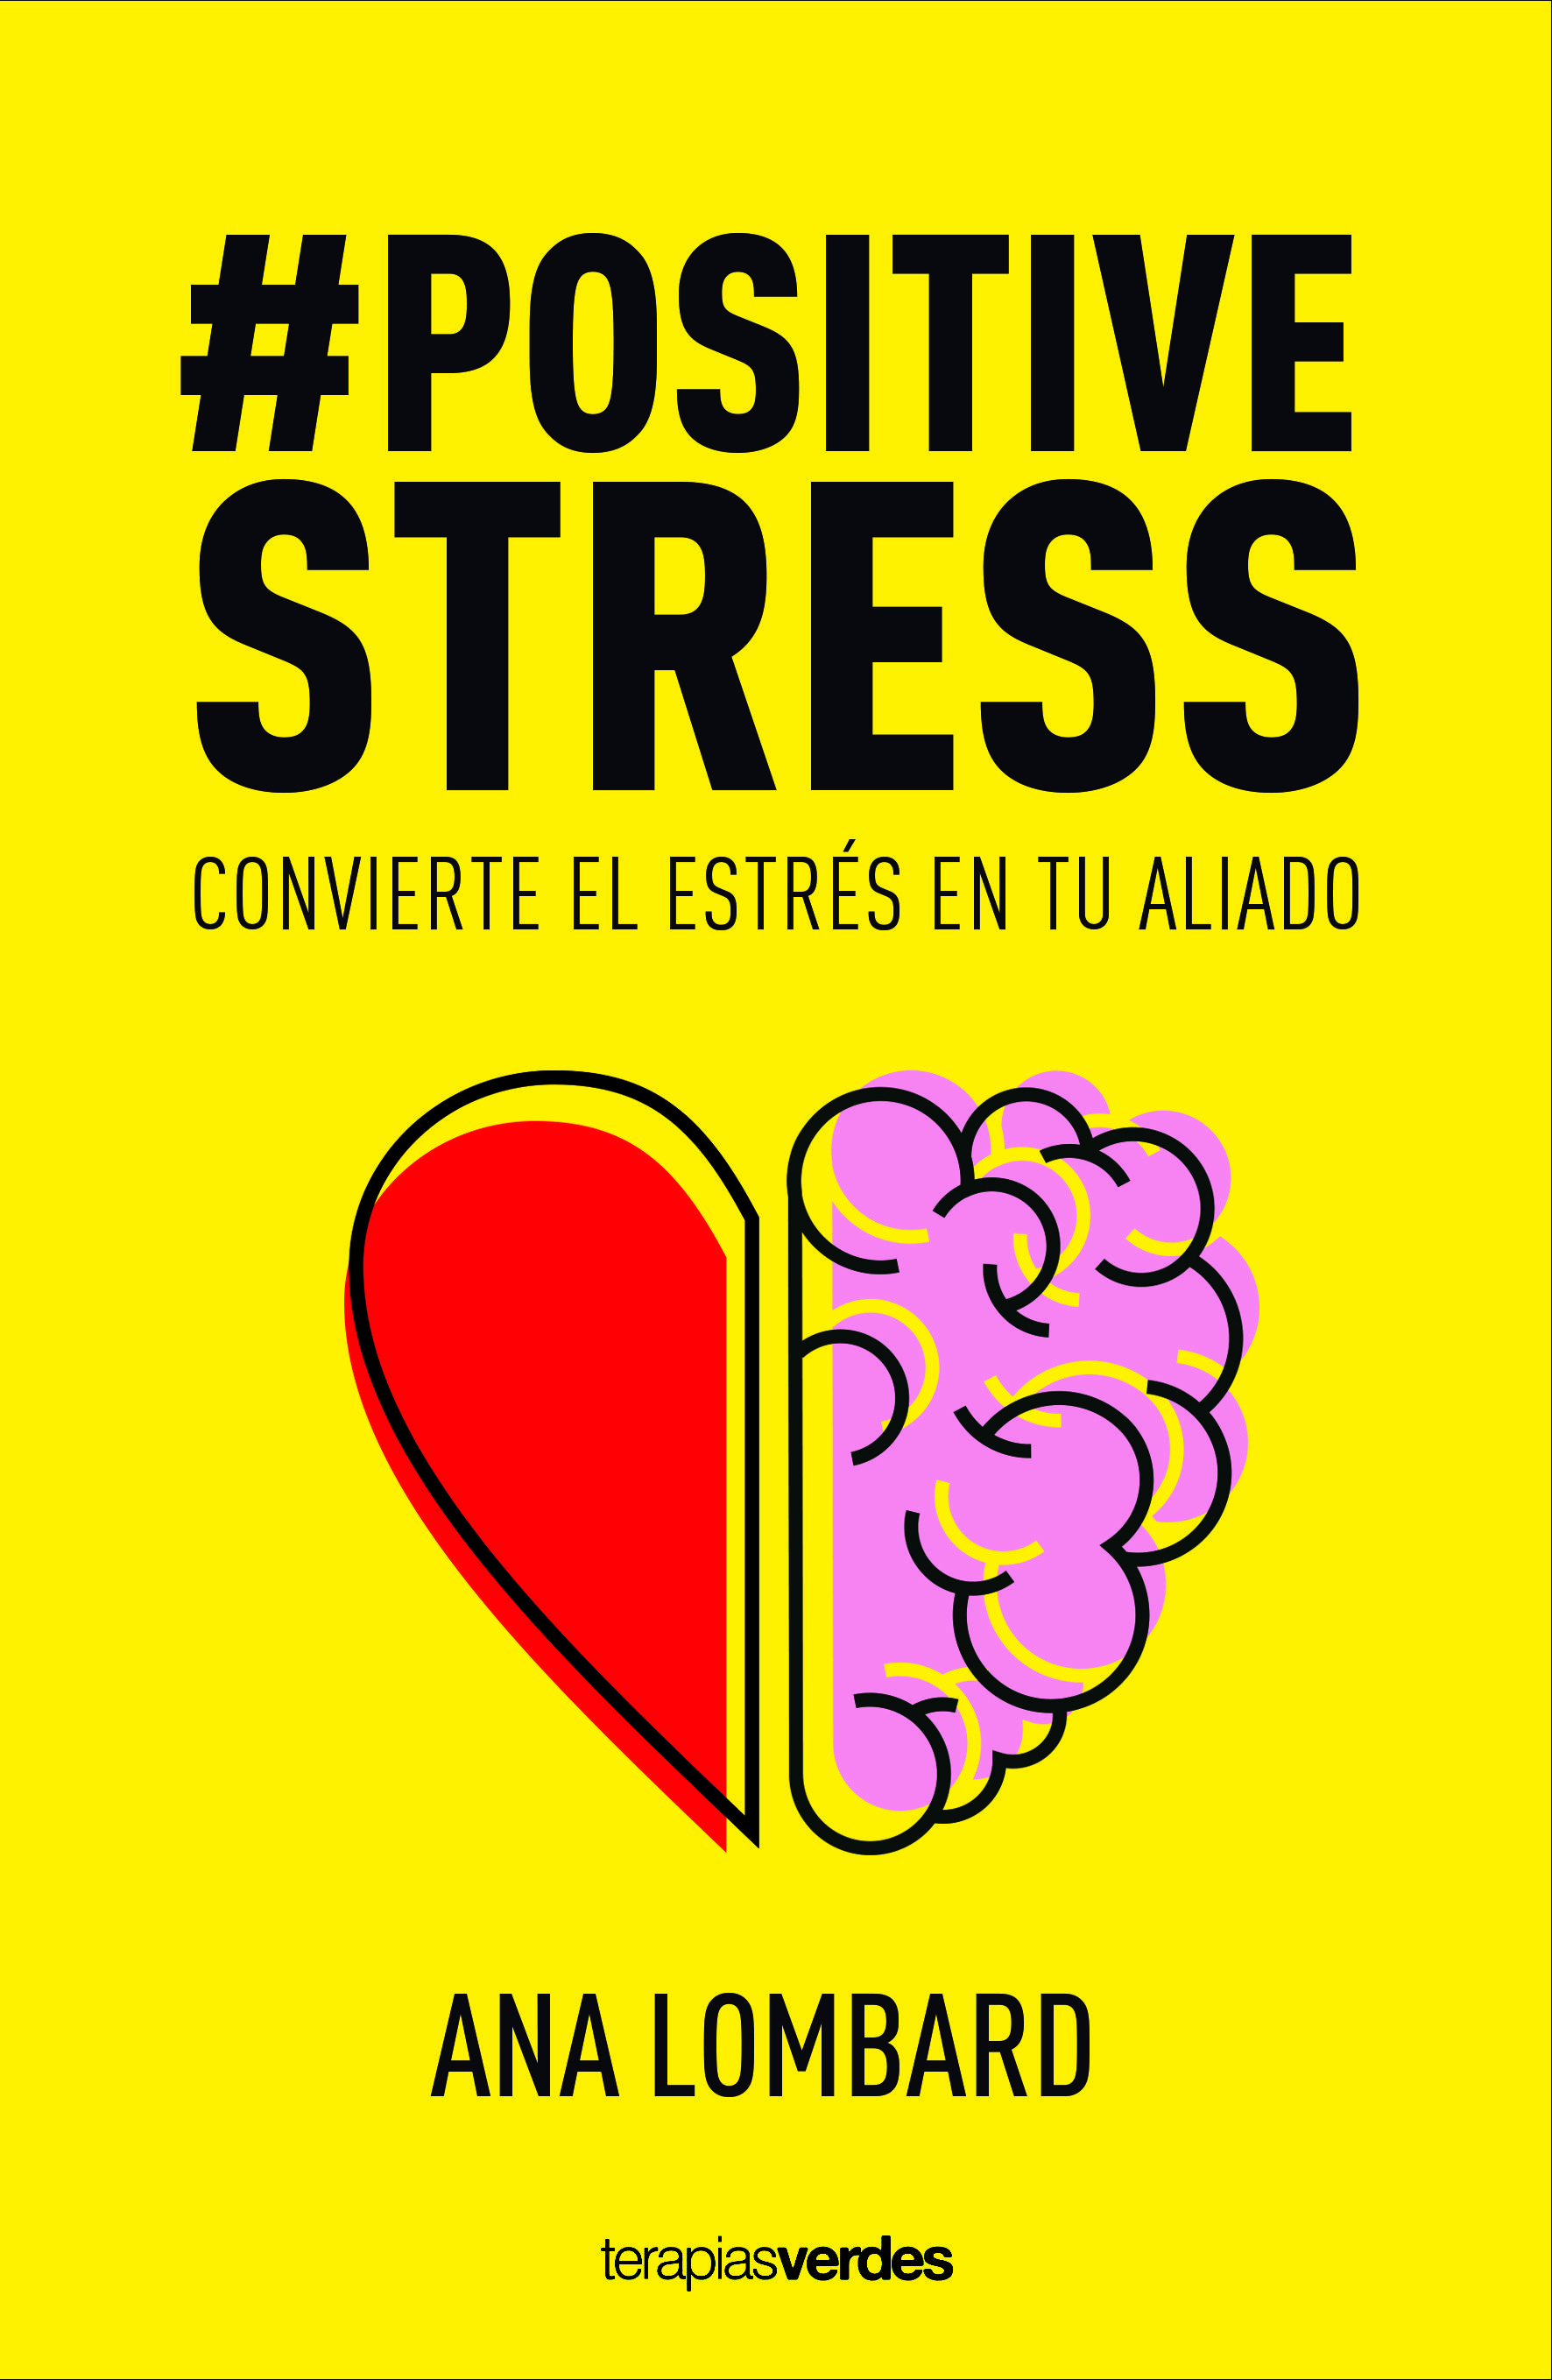 #Positivestress o cómo convertir el estrés en tu aliado, nueva guía de la terapeuta Ana Lombard